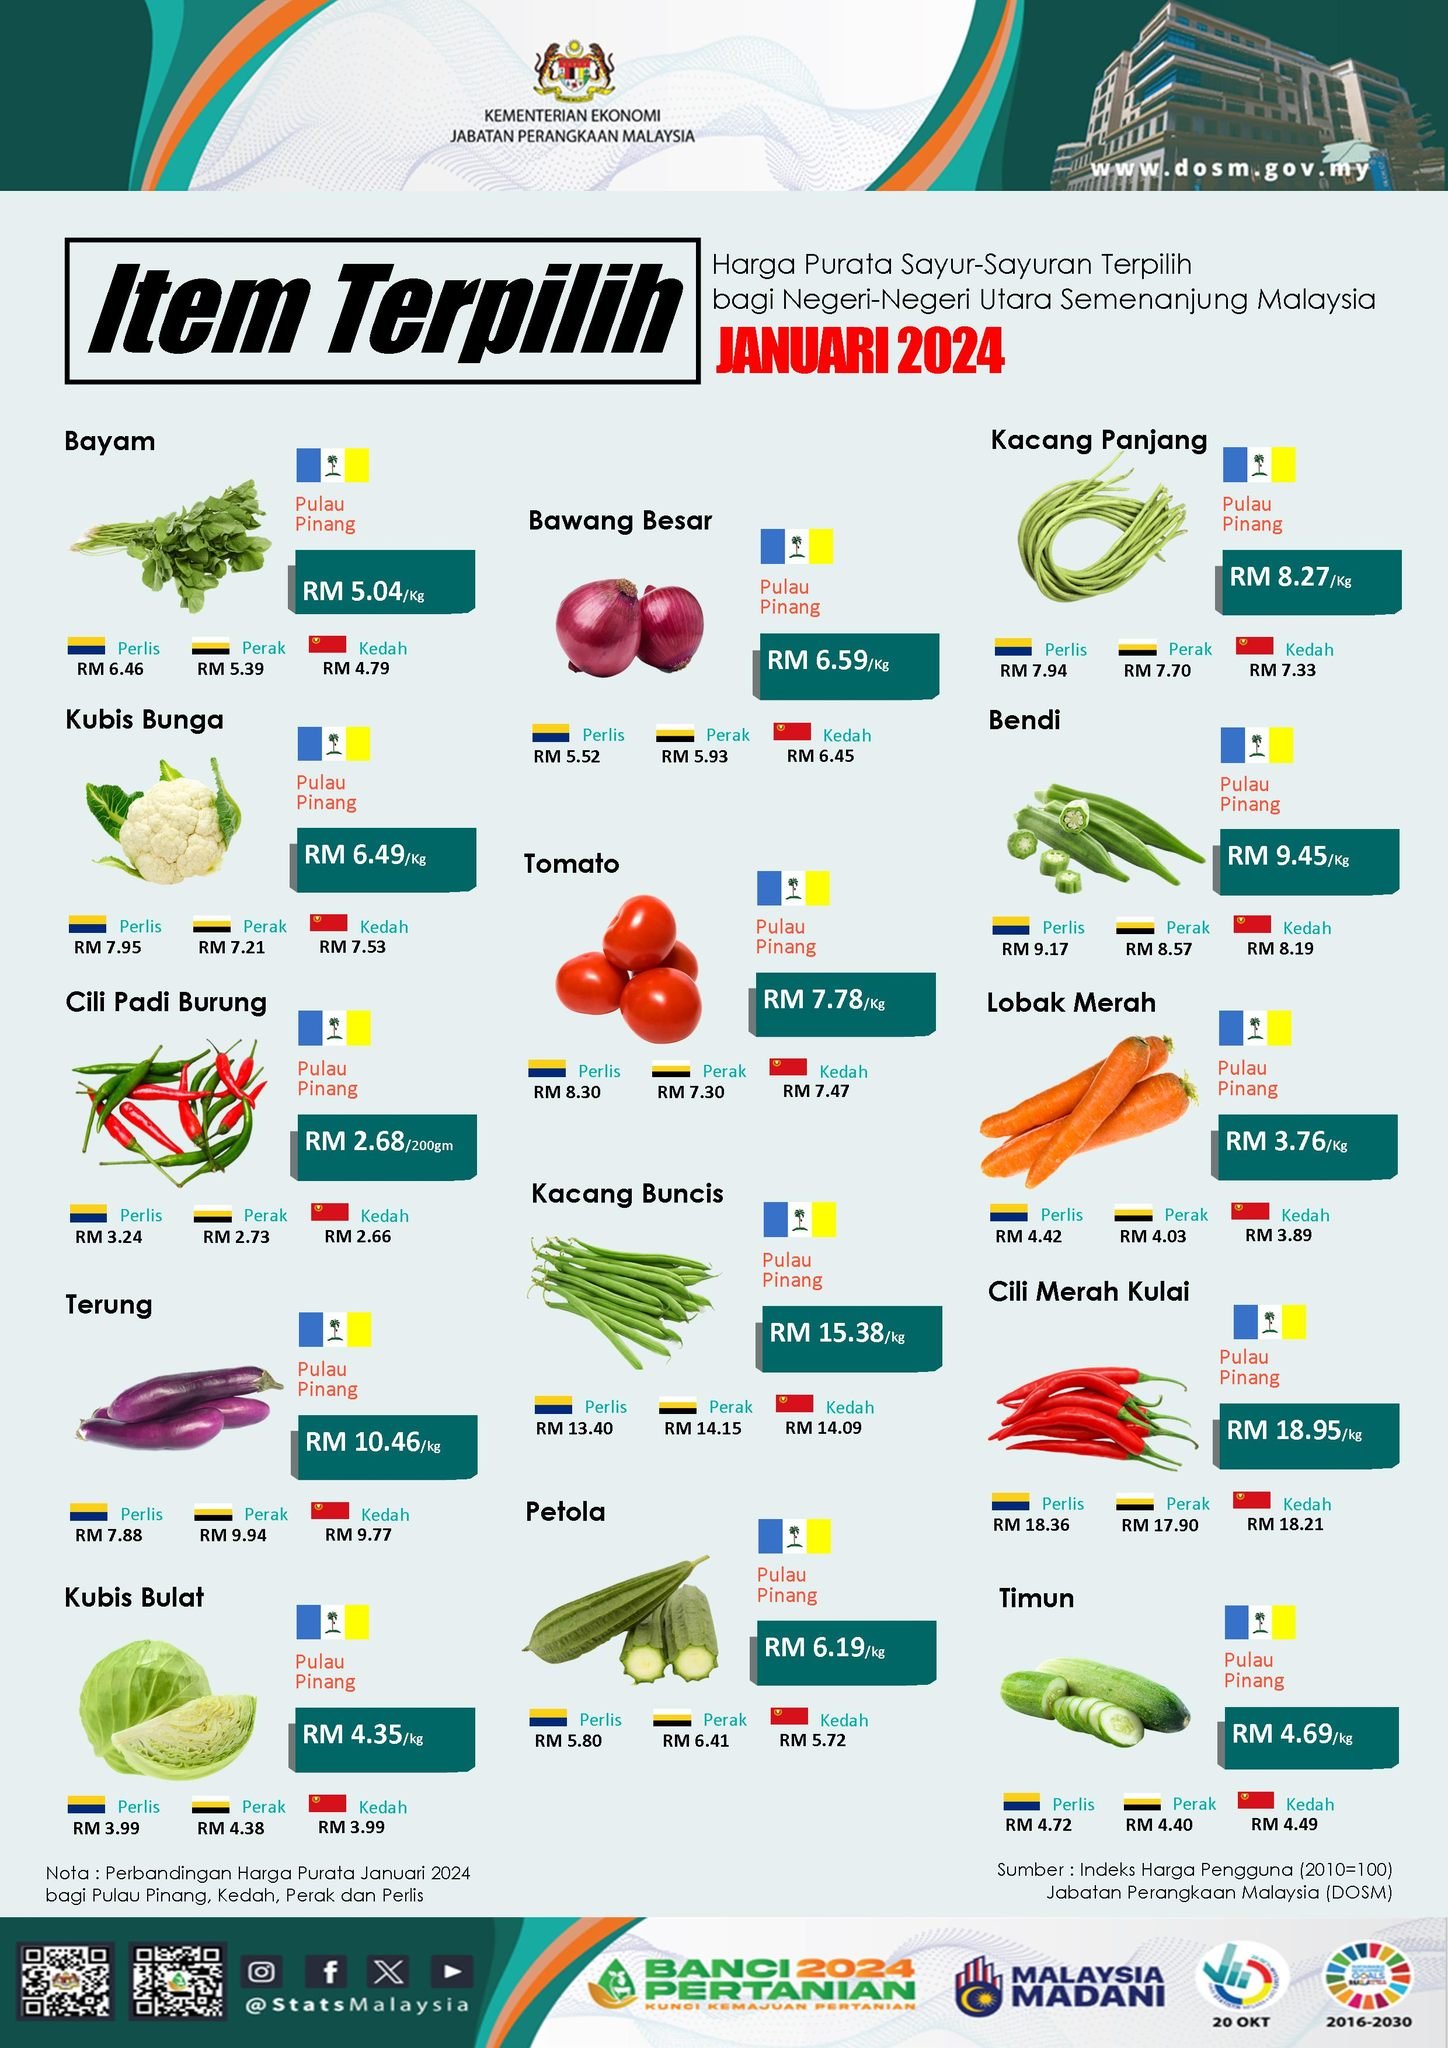 槟城的红萝卜及花菜，平均价格分别是每公斤3令吉76仙及6令吉49仙。